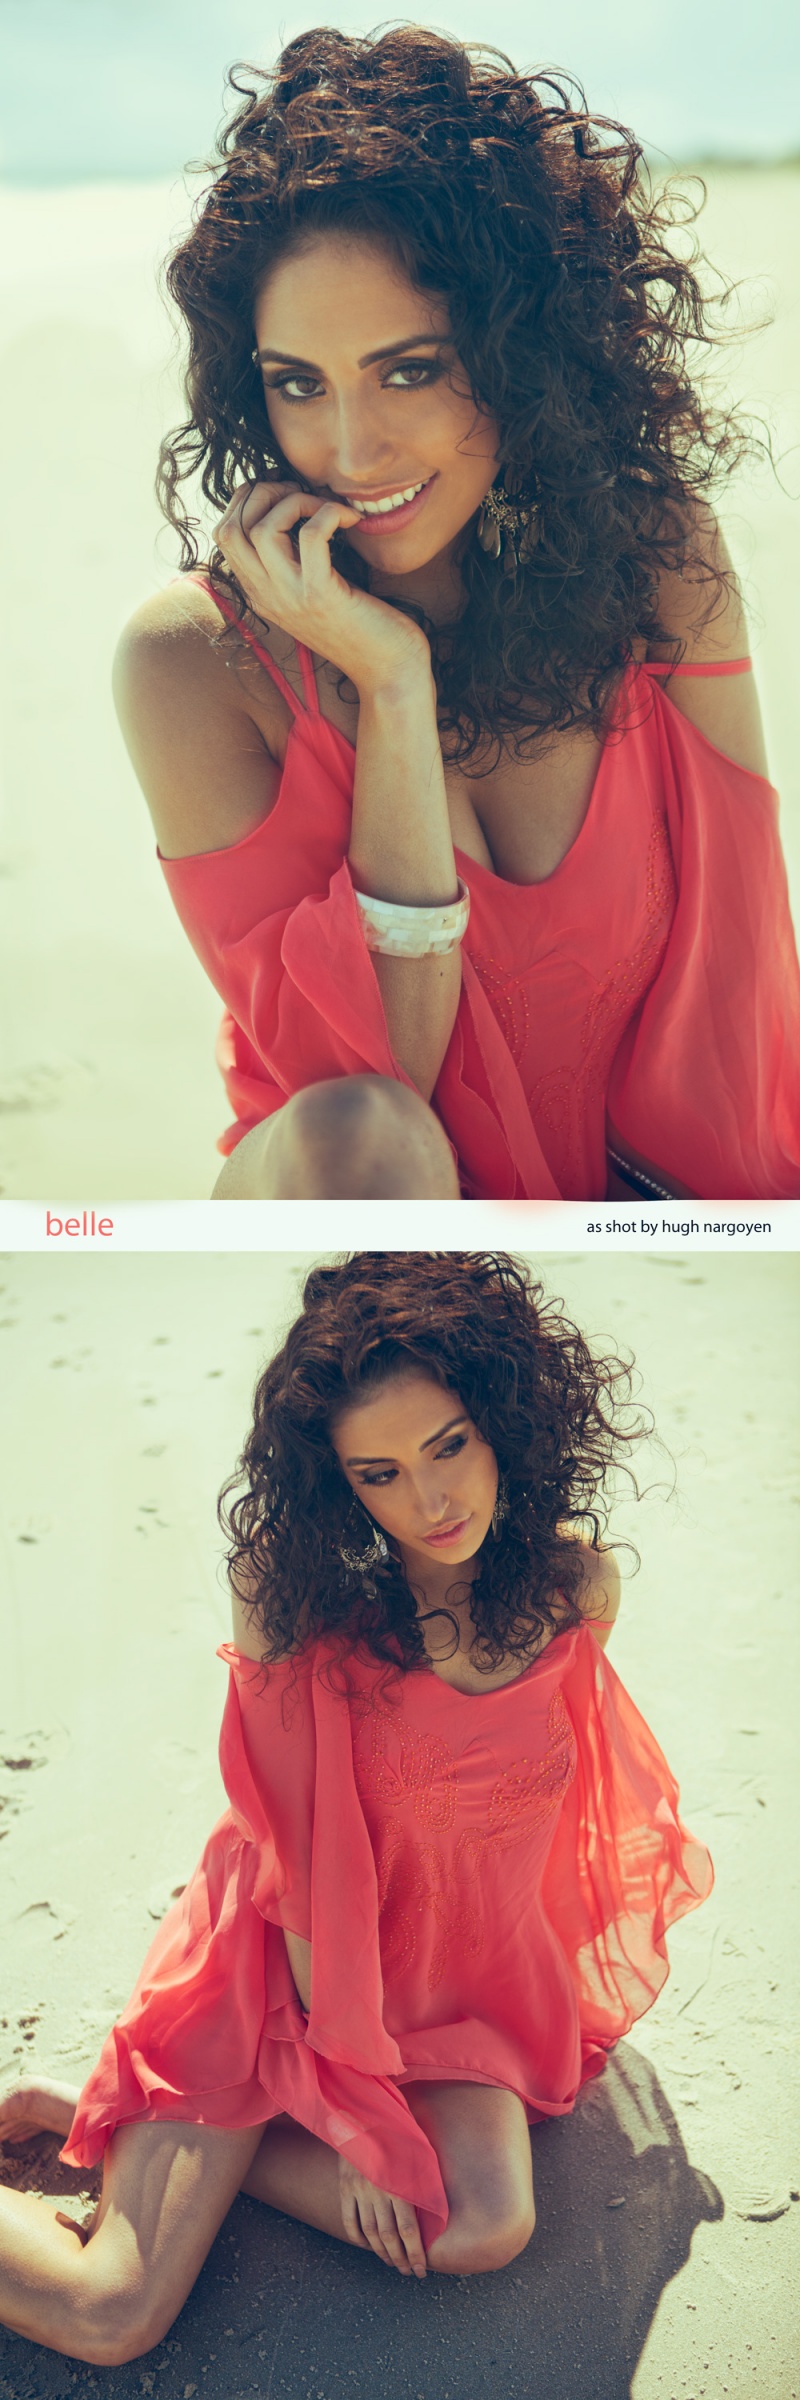 Female model photo shoot of bellie_belle